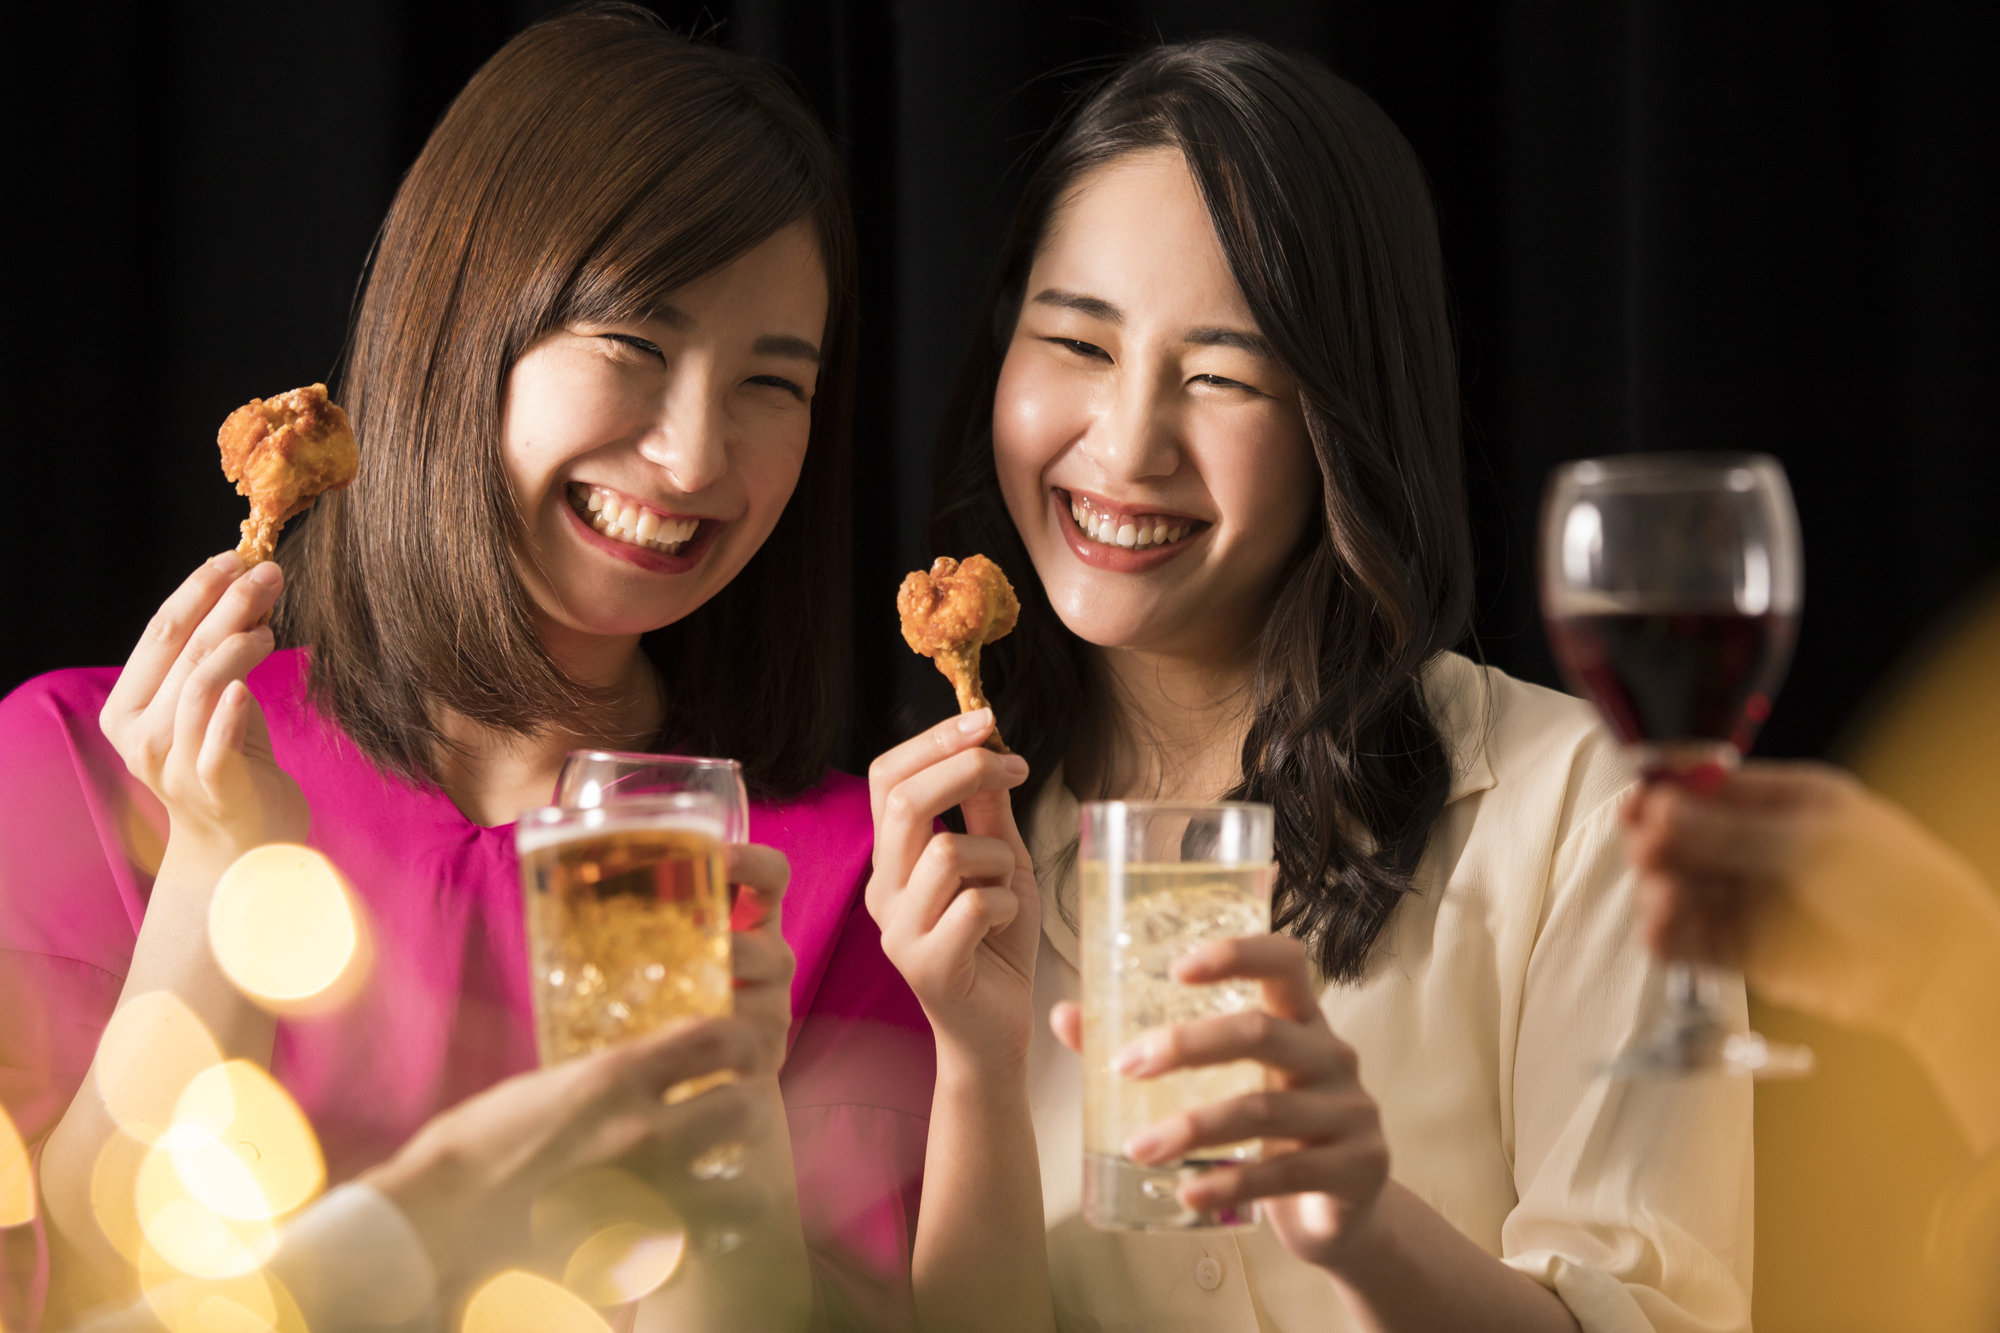 女性二人でお酒を飲みながら食べるシーン